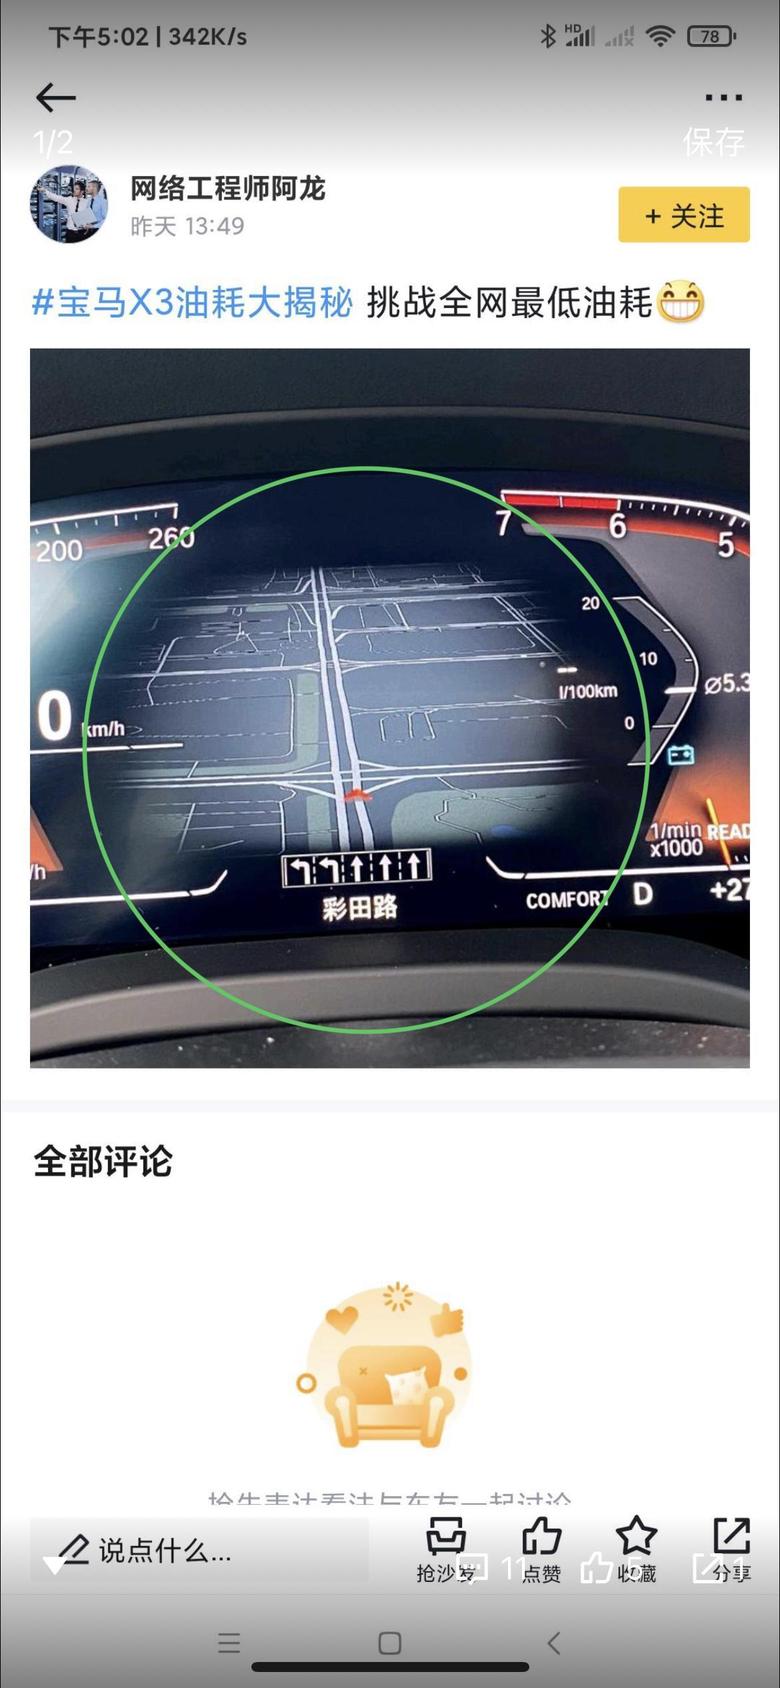 宝马X3驾驶屏幕的导航是怎么调出来的？绿色划圈的部分，我的车这区域着车后，没有任何显示一片空白。（图是借网友的）